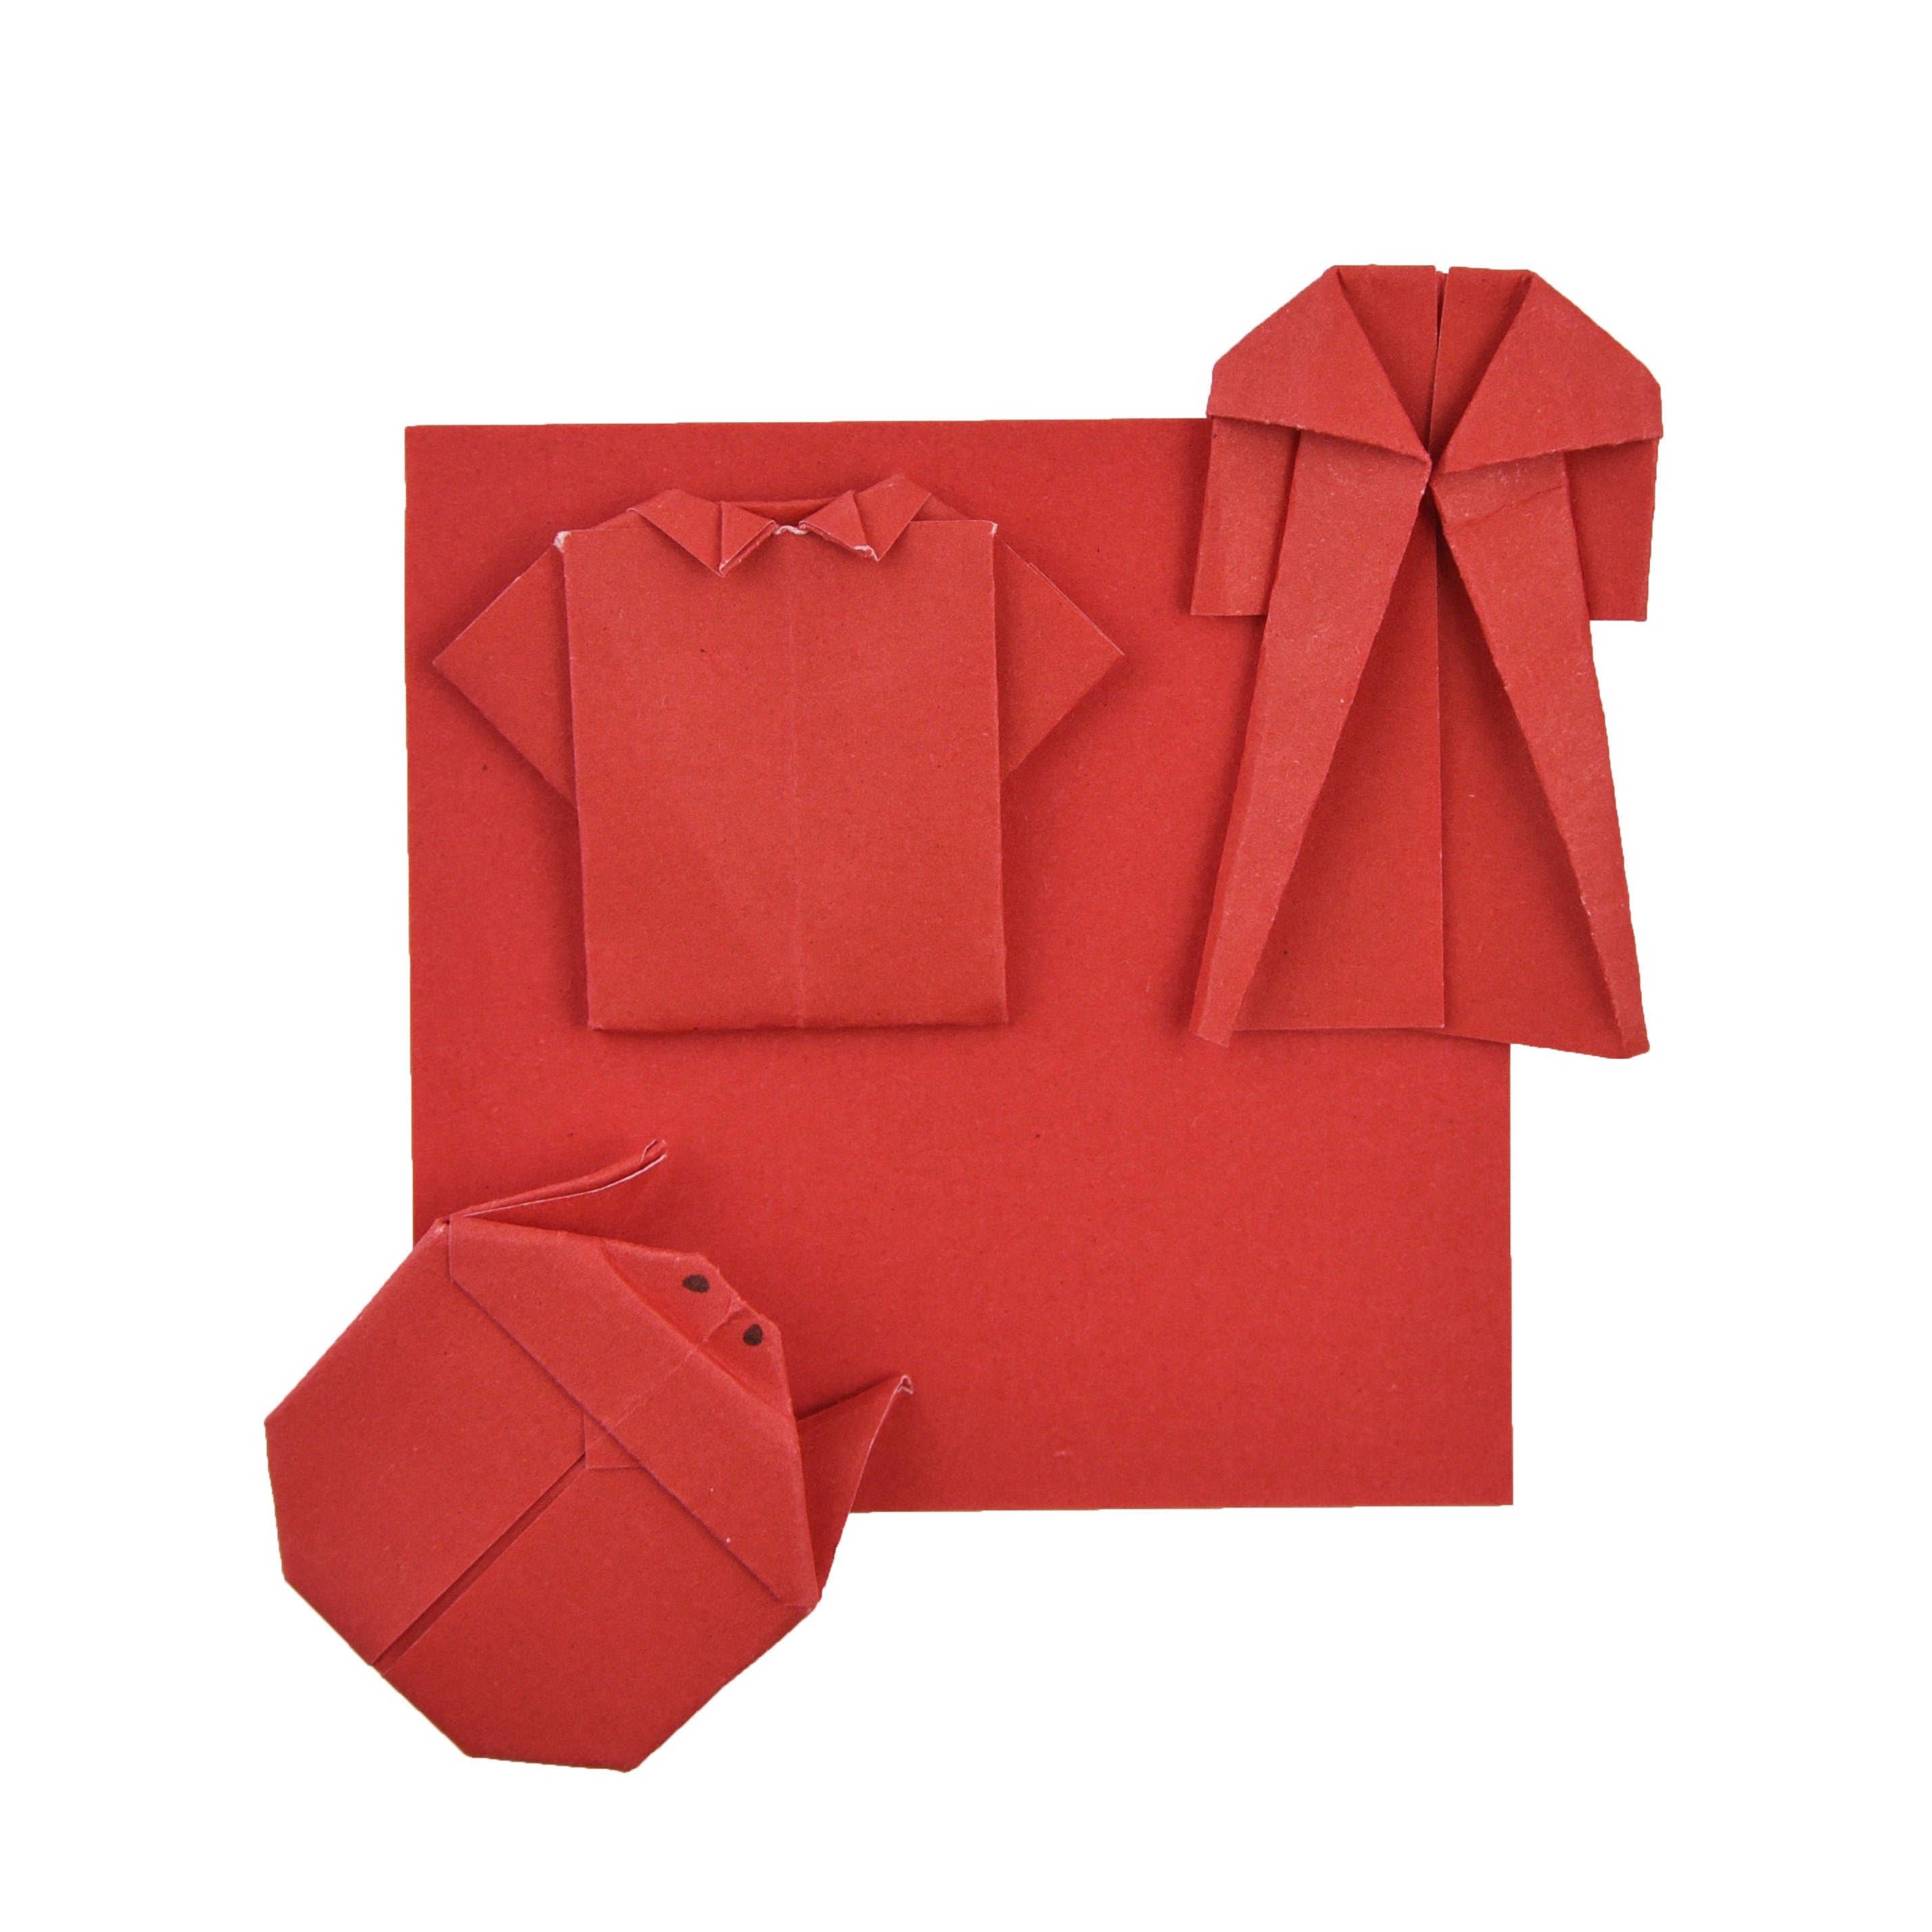 100 Hojas de Papel Origami - 6x6 pulgadas - Paquete de Papel Cuadrado para Plegar, Grullas de Origami y Decoración - S05